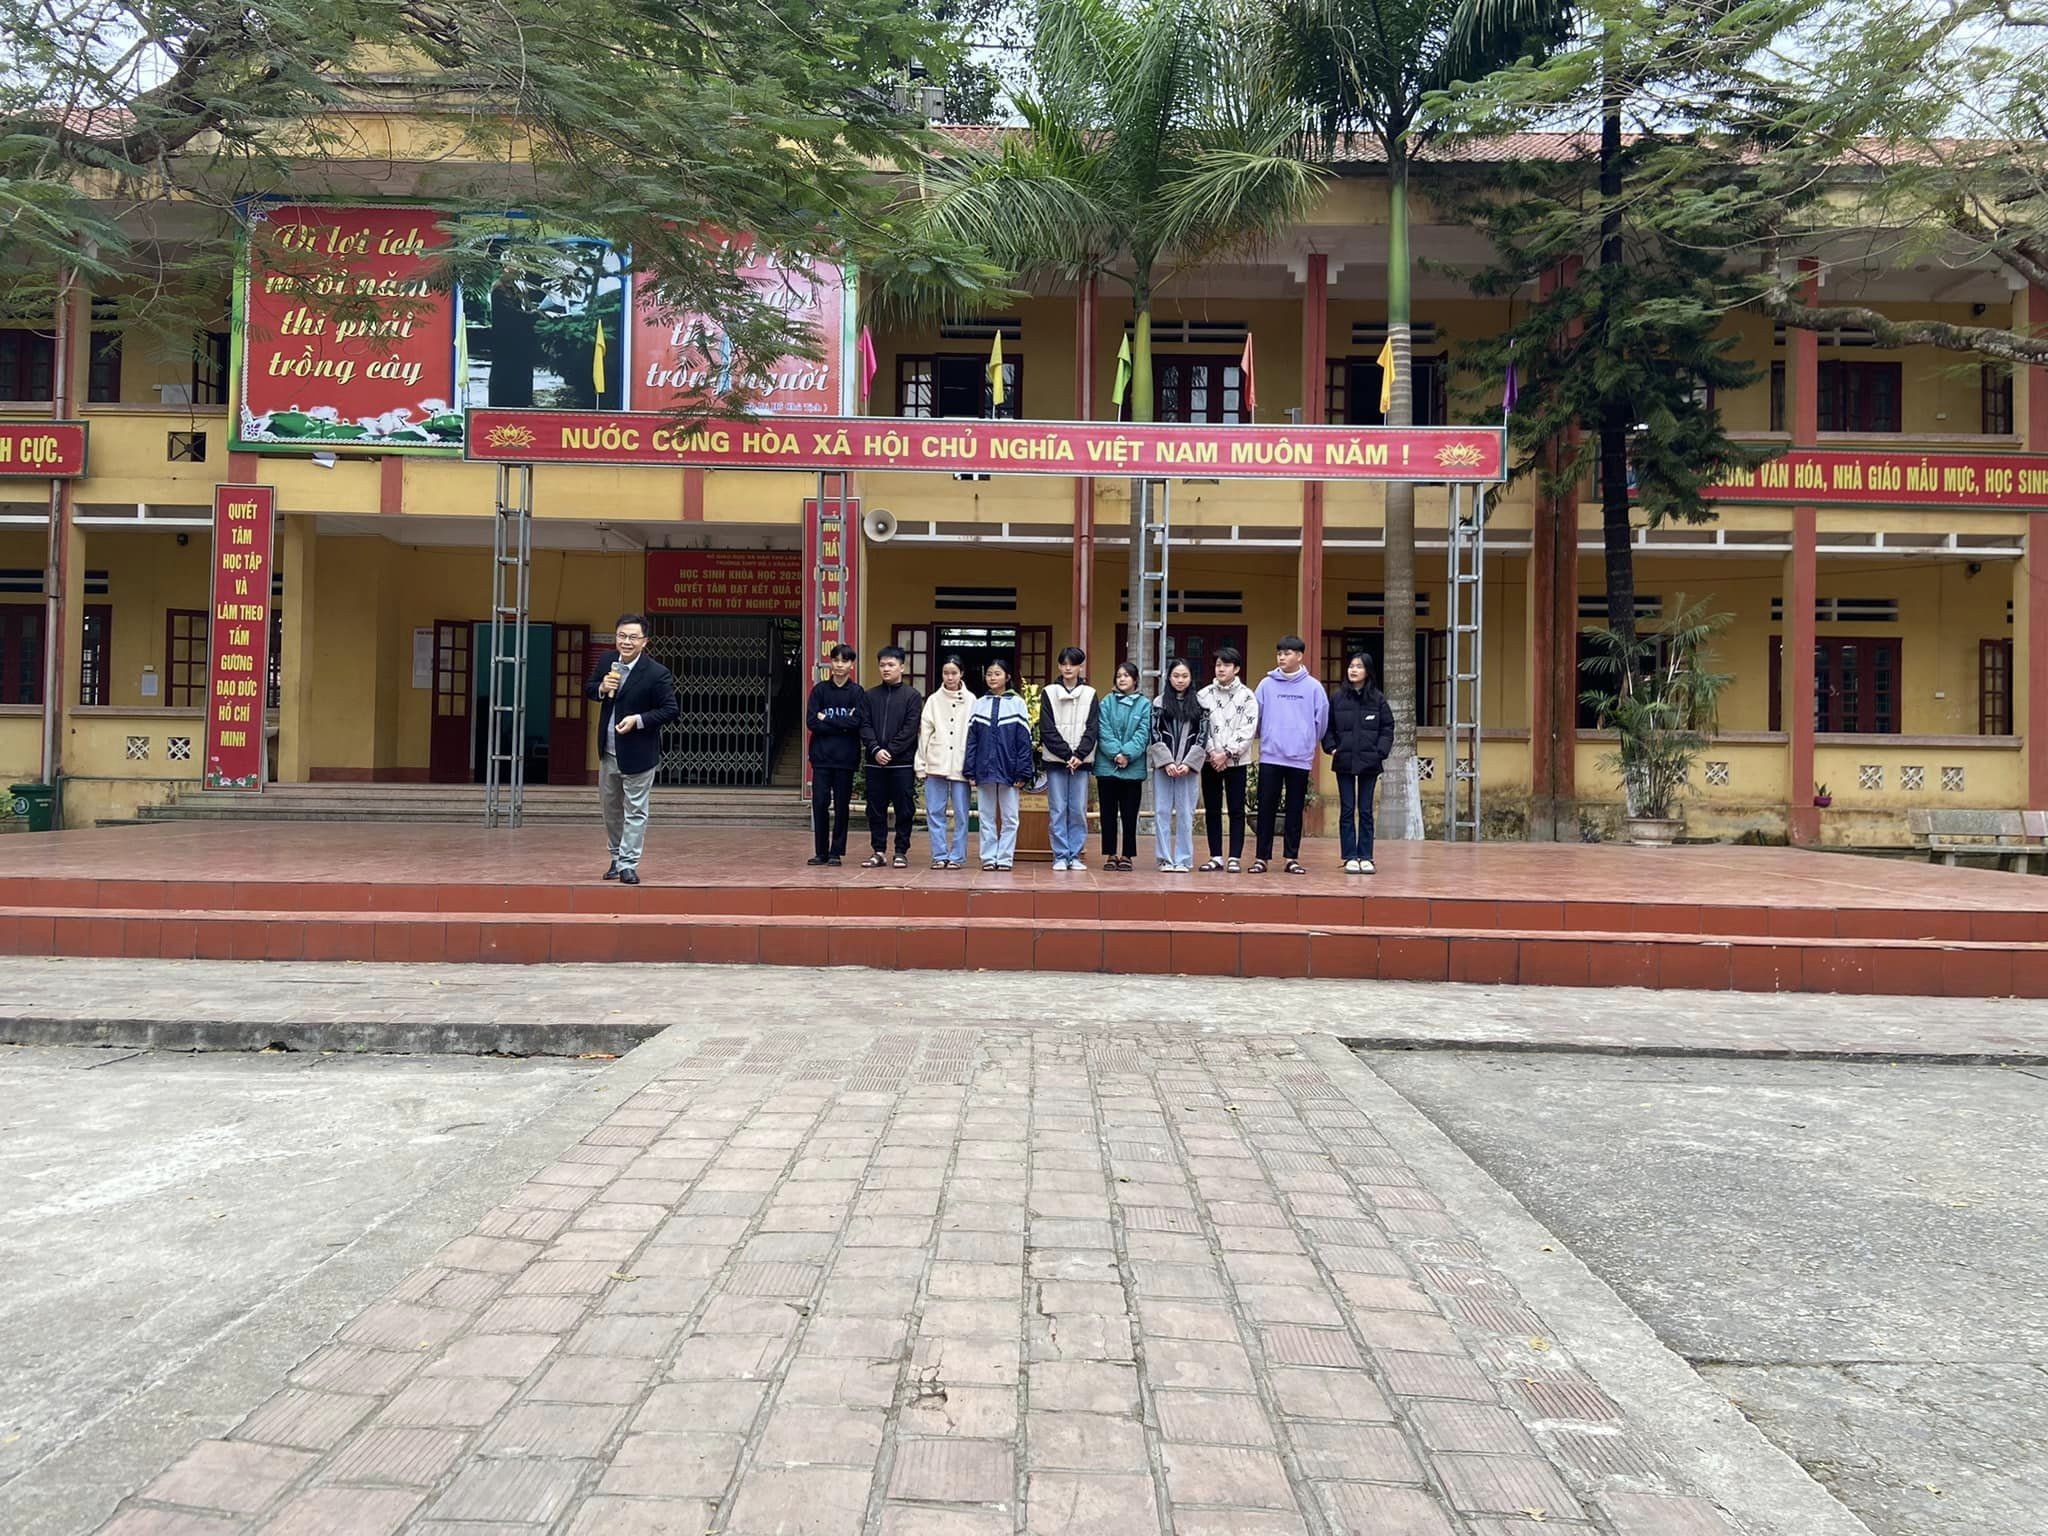 TĐịnh hướng nghề nghiệp tại các trường THPT tỉnh Lào Cai